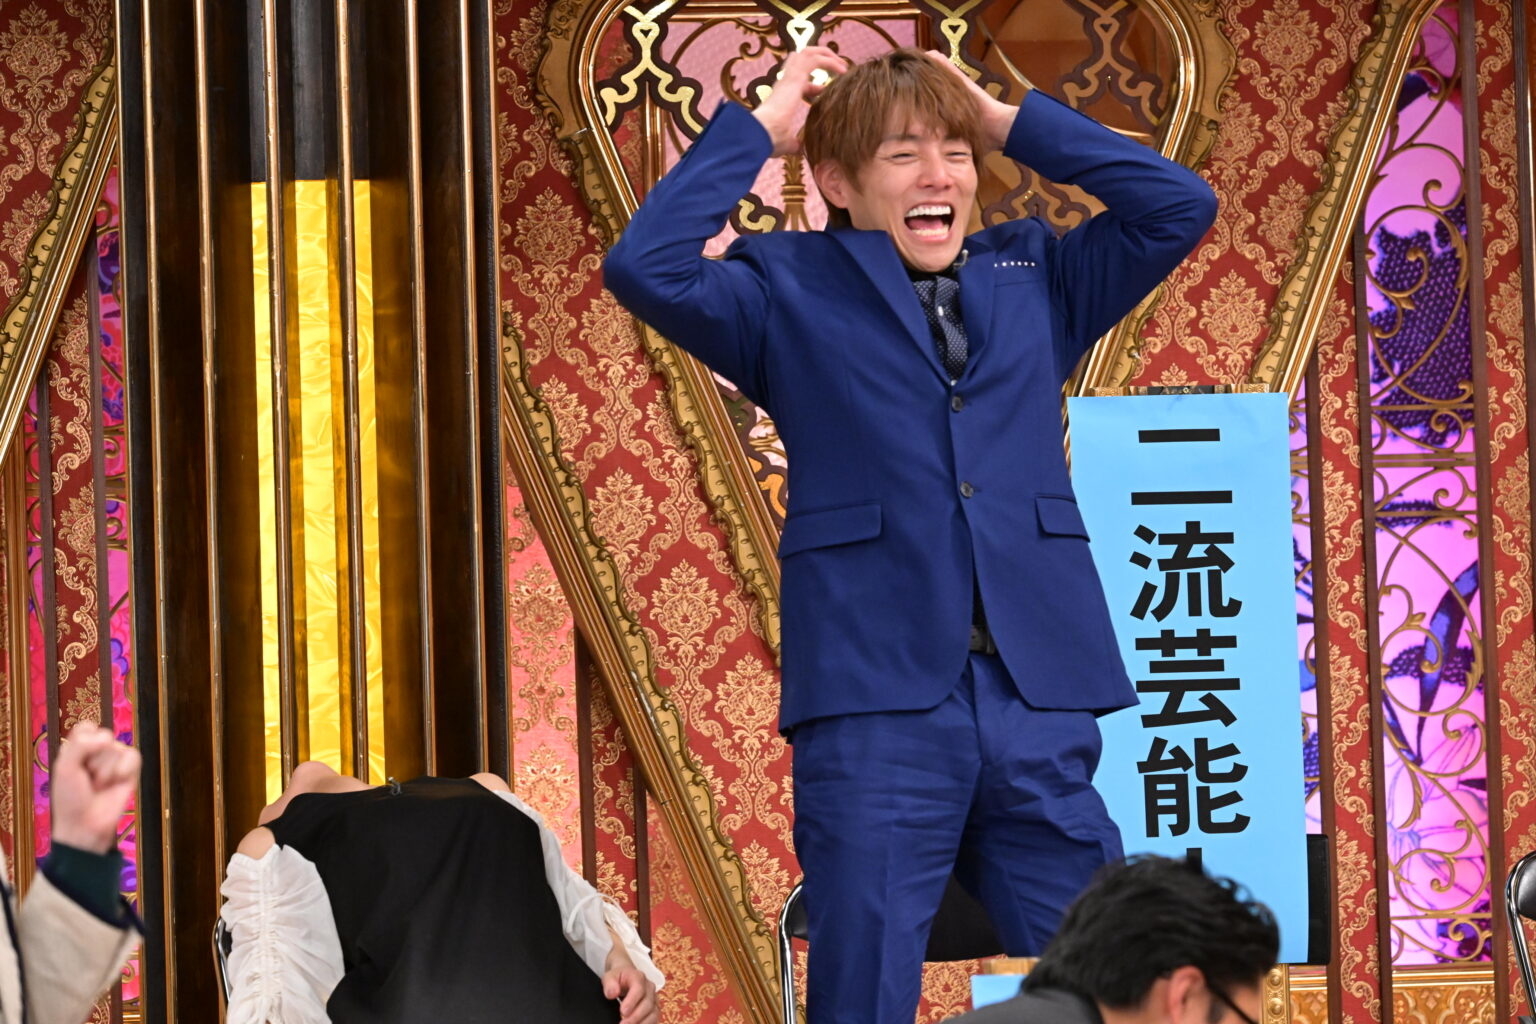 男性がステージ上で青いスーツを着て喜びのポーズをとっている。